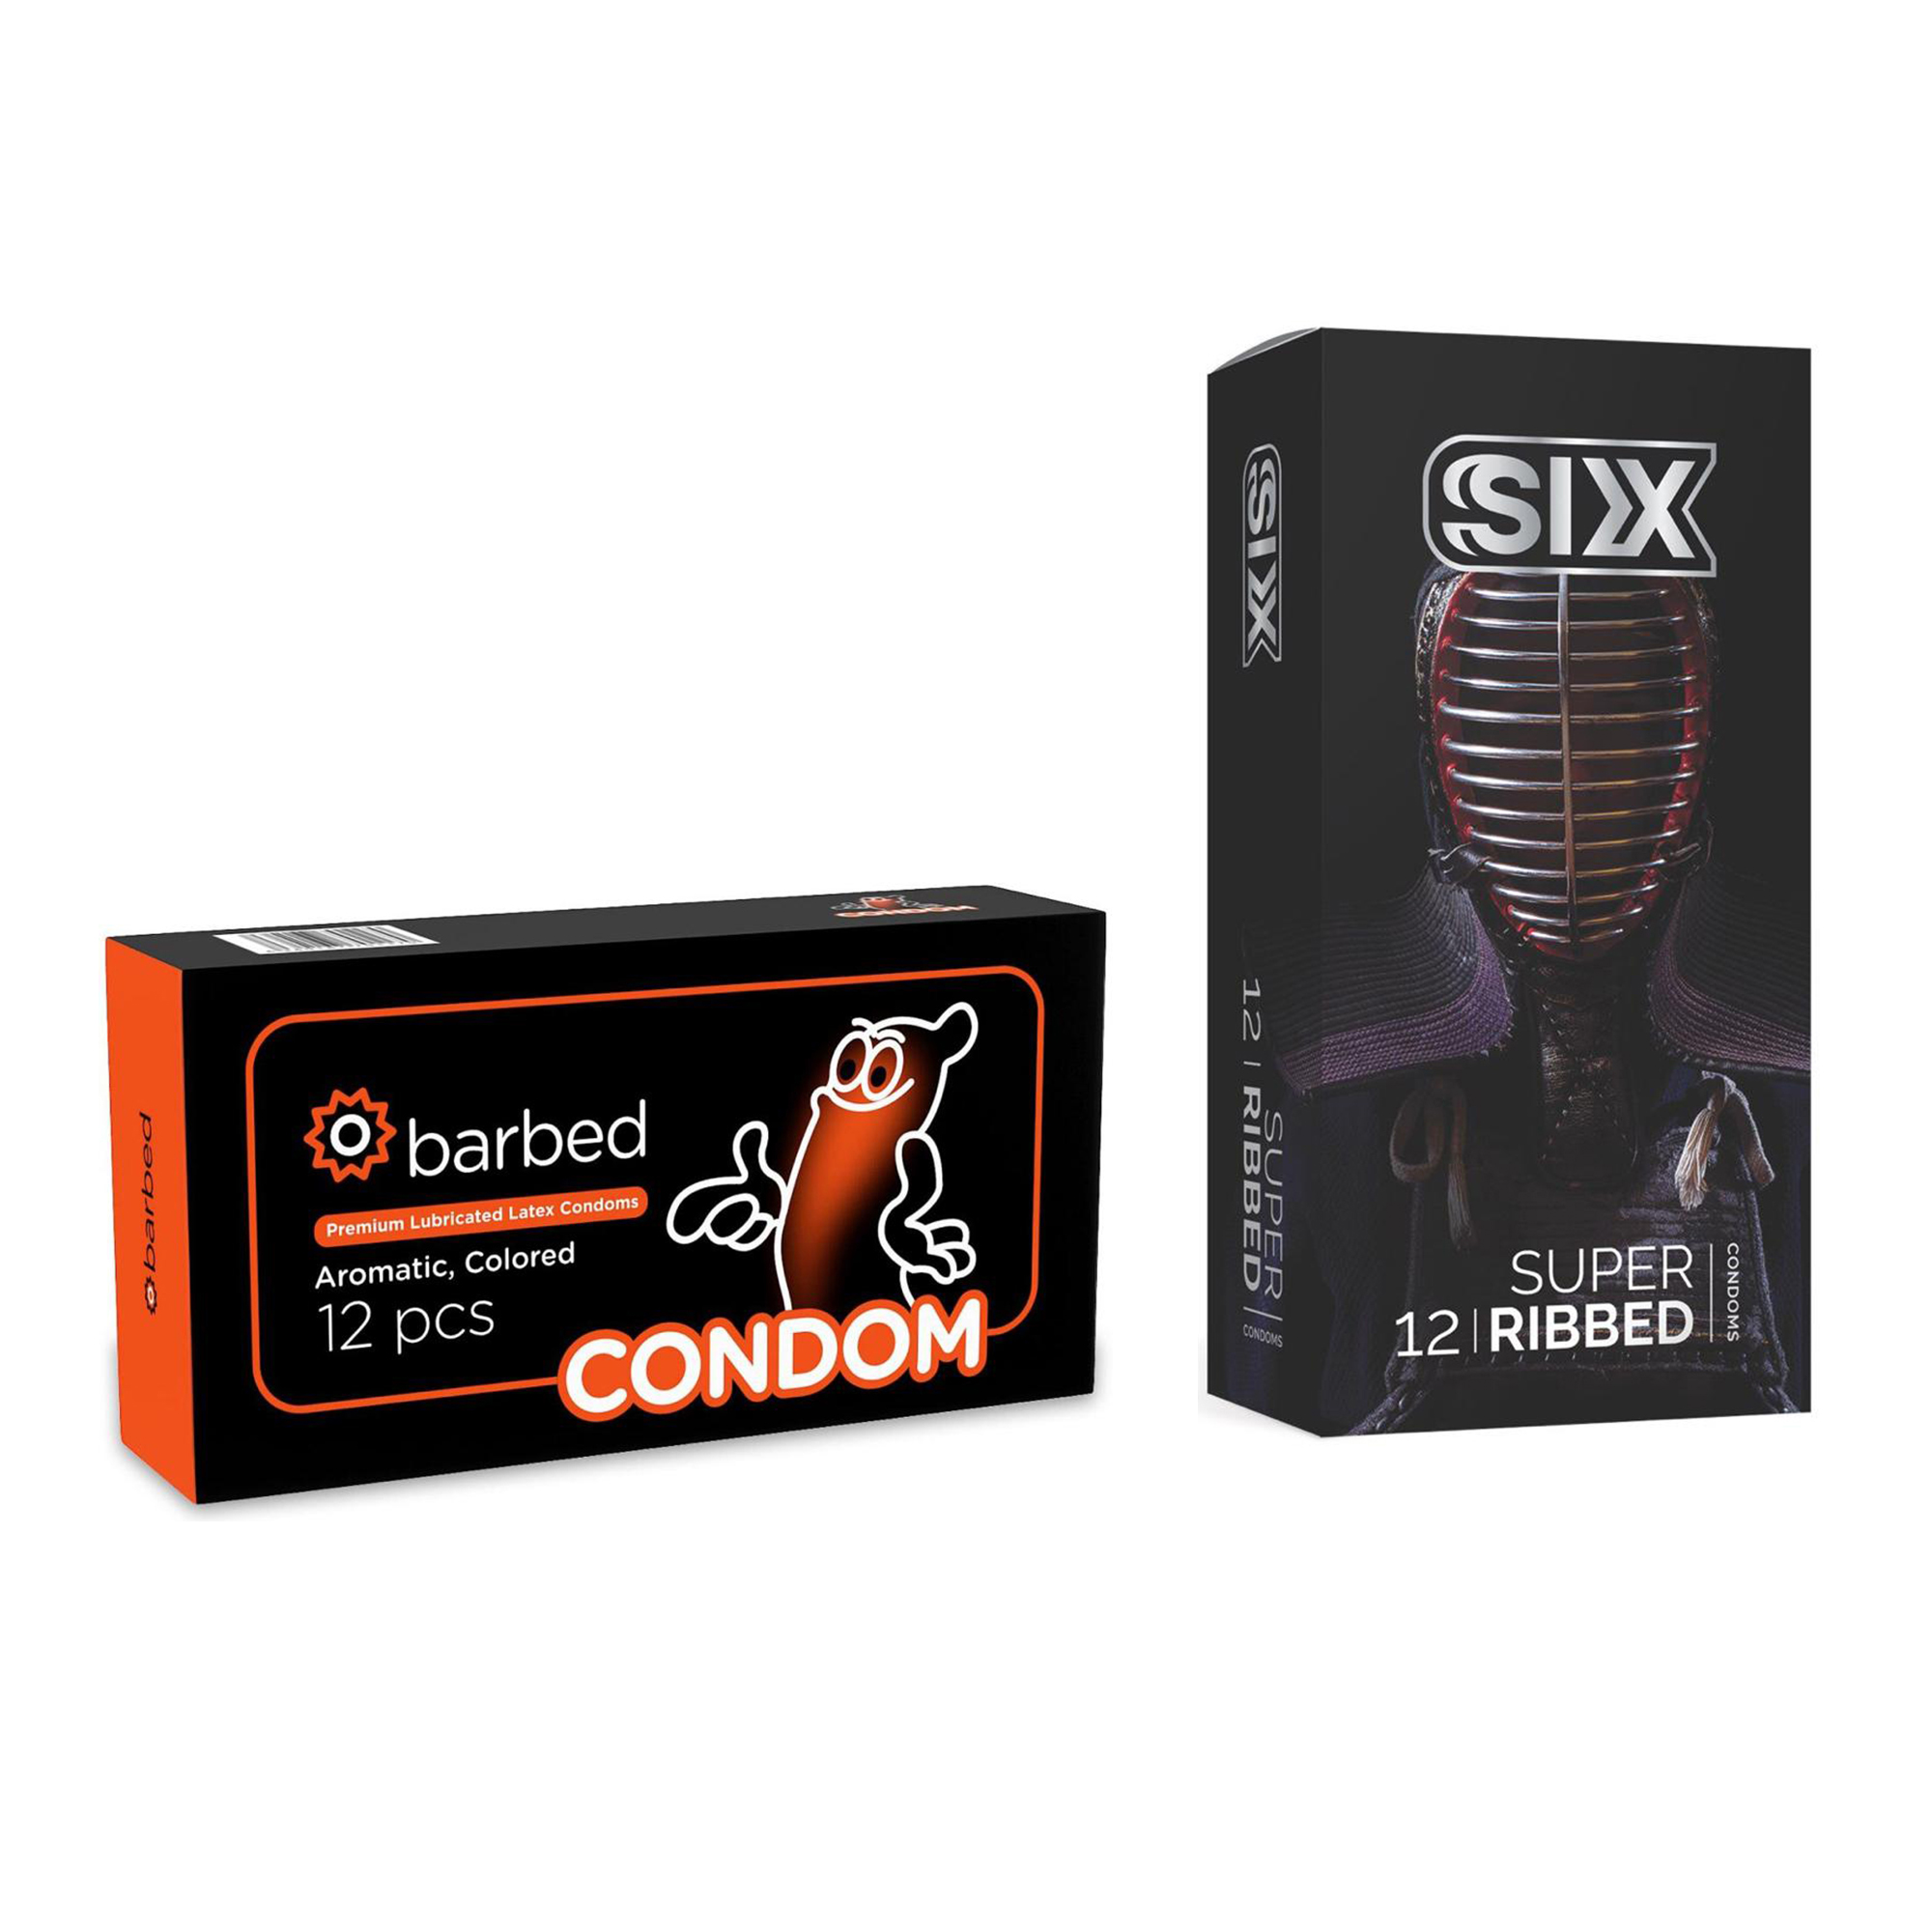 کاندوم سیکس مدل Super Ribbed بسته 12 عددی به همراه کاندوم کاندوم مدل Barbed بسته 12 عددی